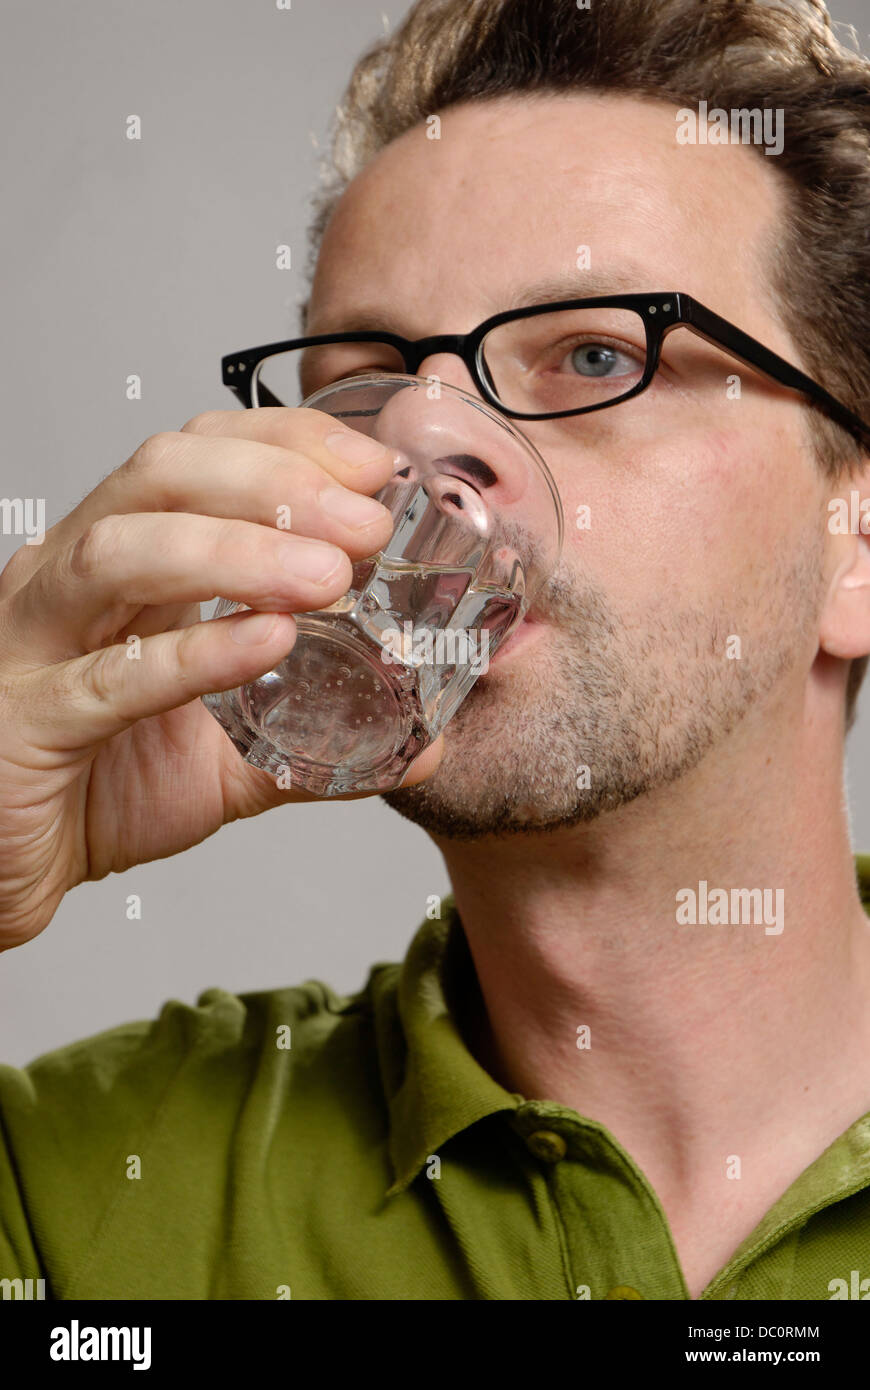 Un homme boit un verre d'eau Banque D'Images